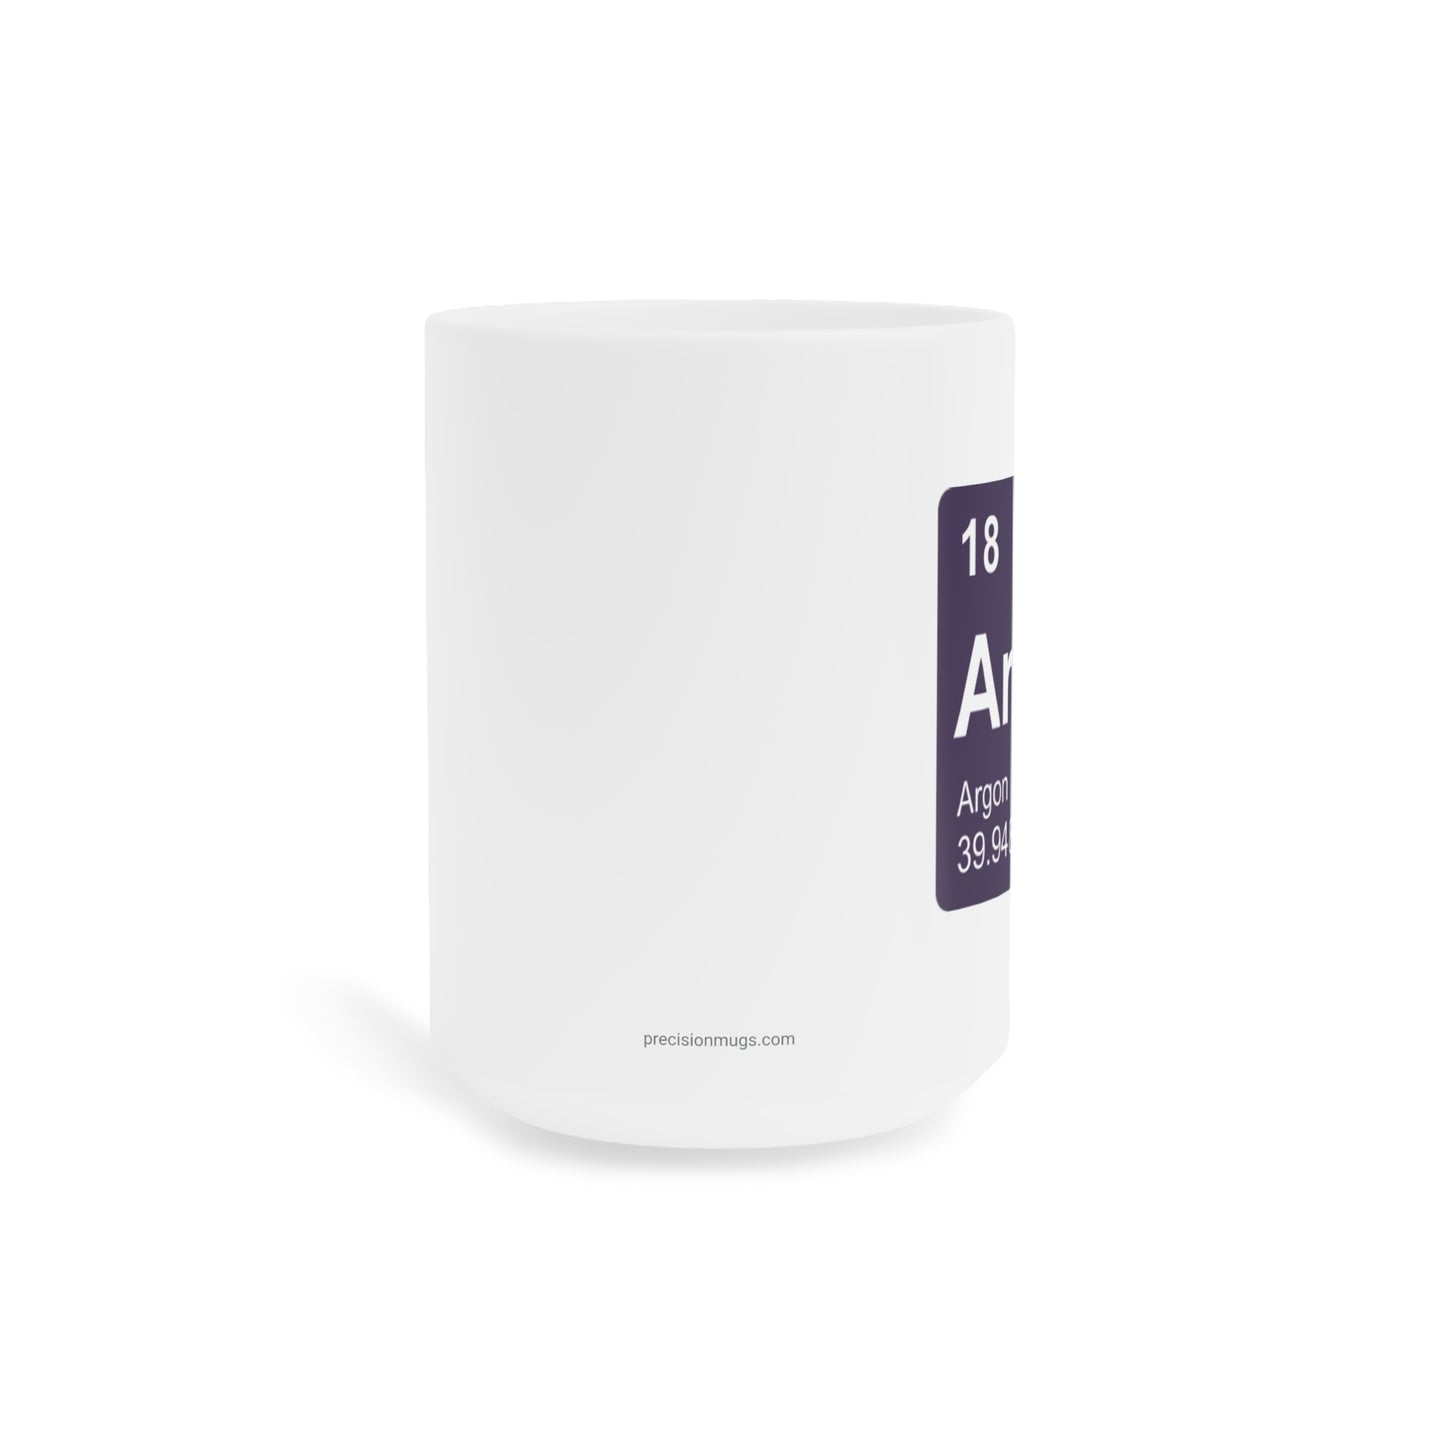 Coffee Mug 15oz - (018) Argon Ar